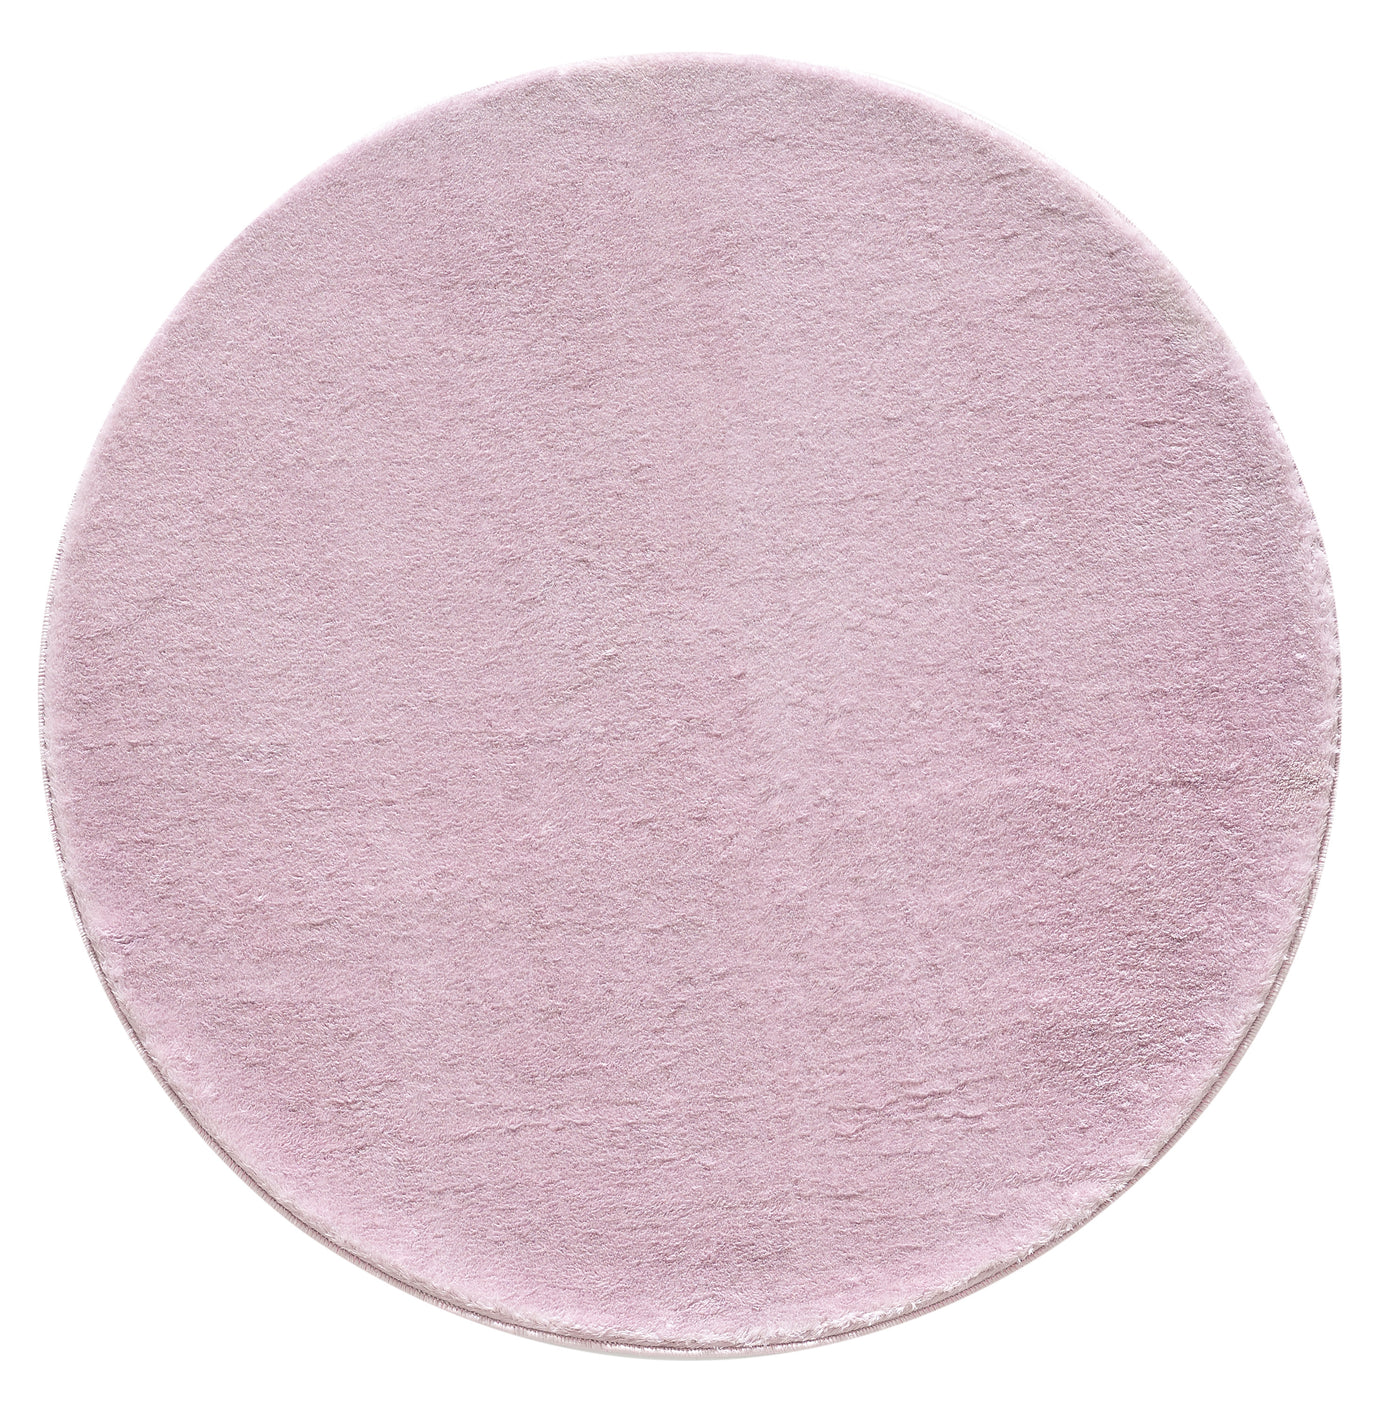 Teppich Weich Flauschig Waschbar Wohnzimmerteppich Einfarbig Lila